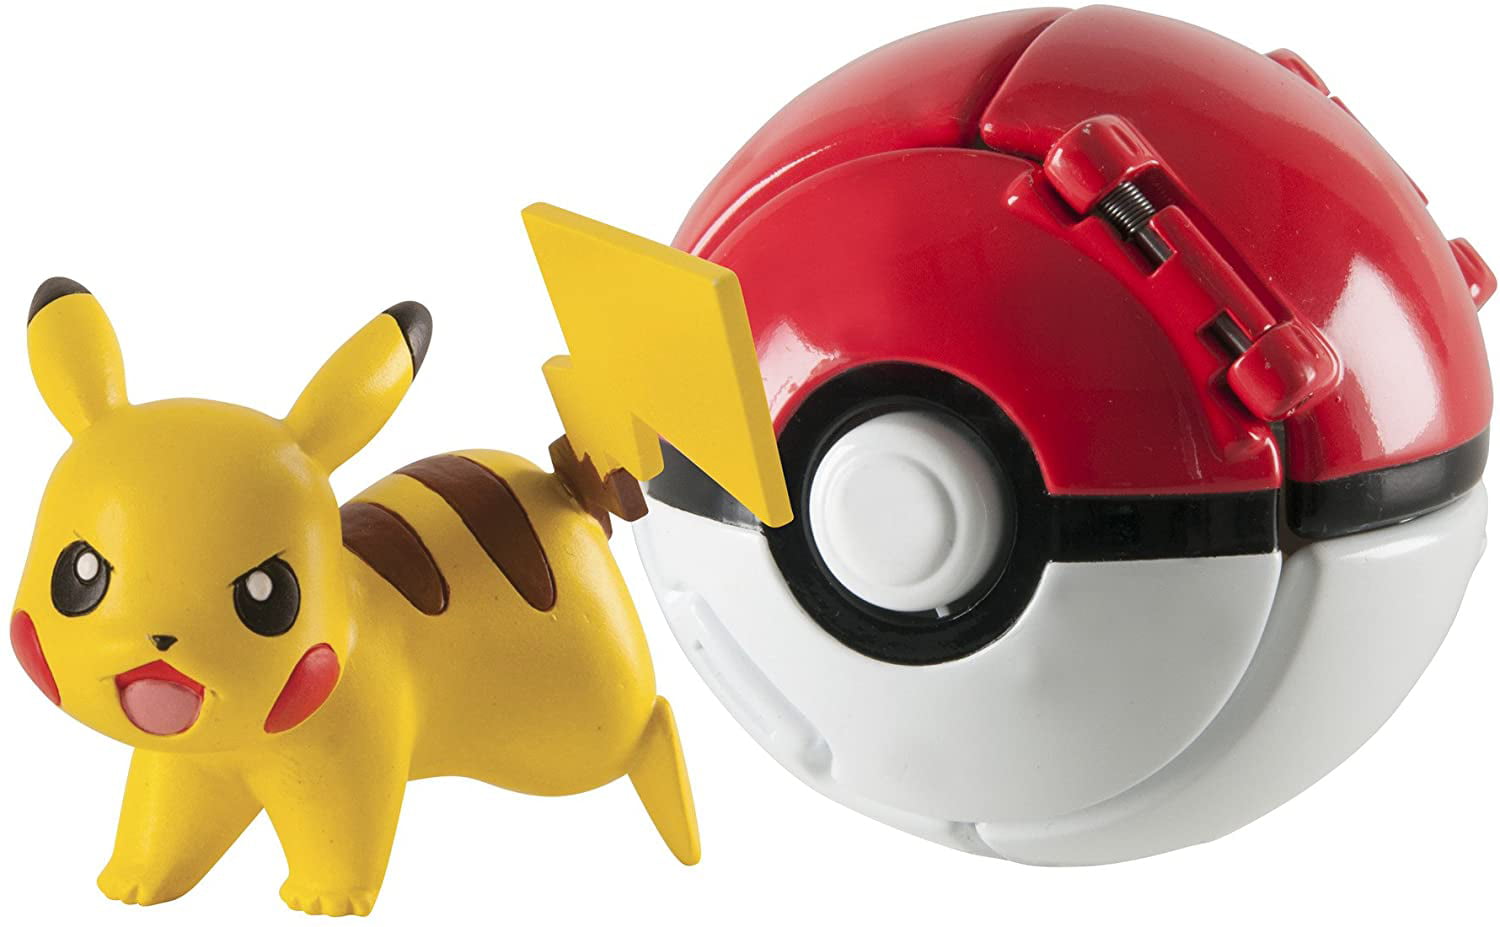 Pokemon Throw N Pop POKE BALL avec Pokemon figures Toys Set pour enfants #Gik